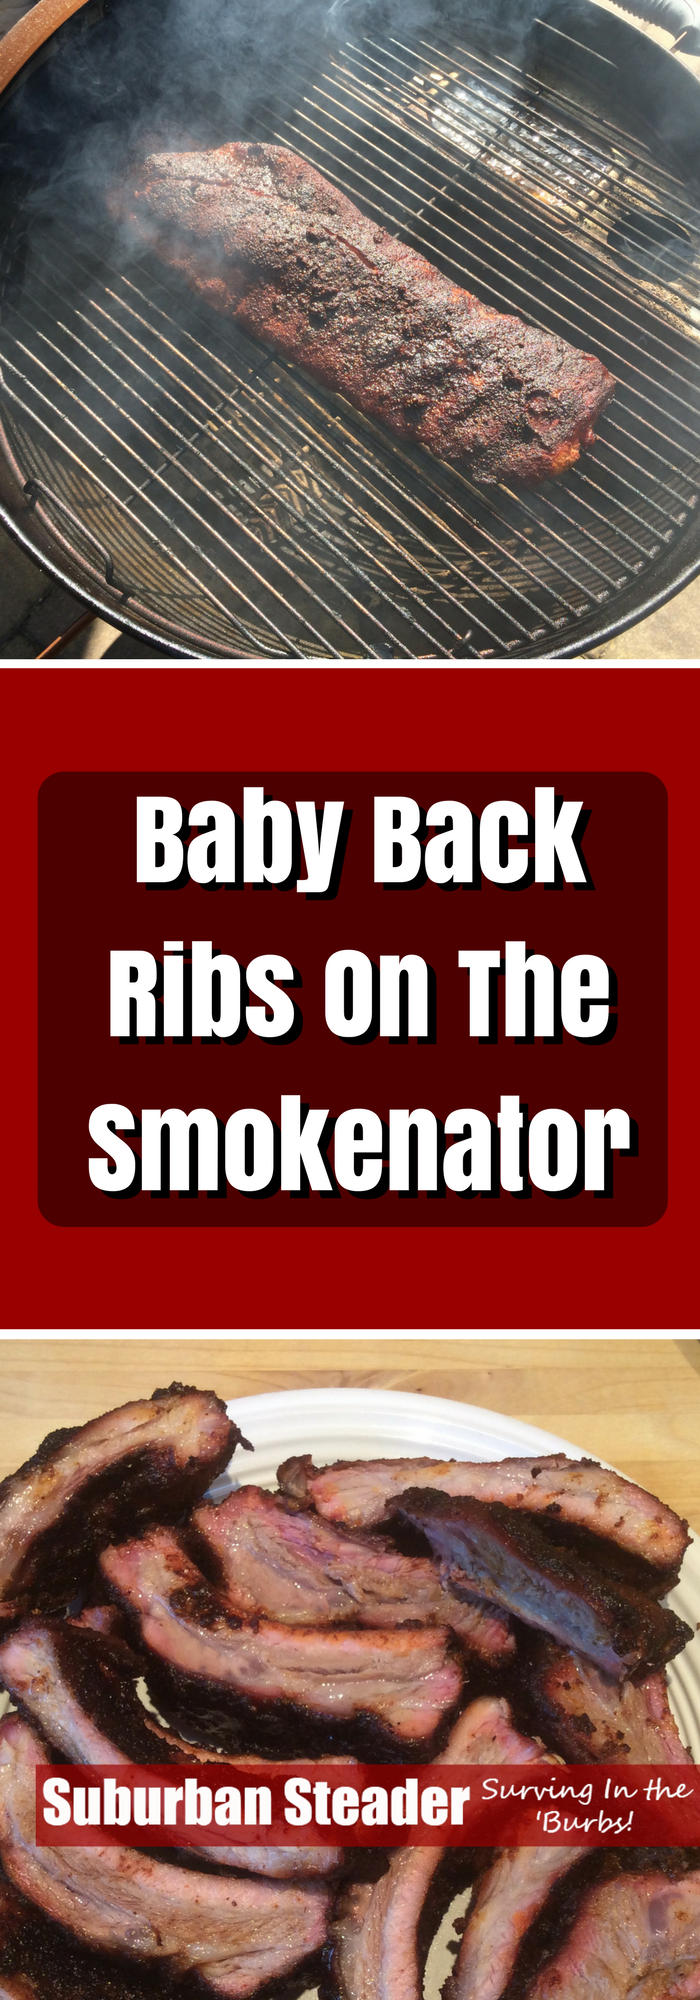 Baby Back Ribs On The Smokenator